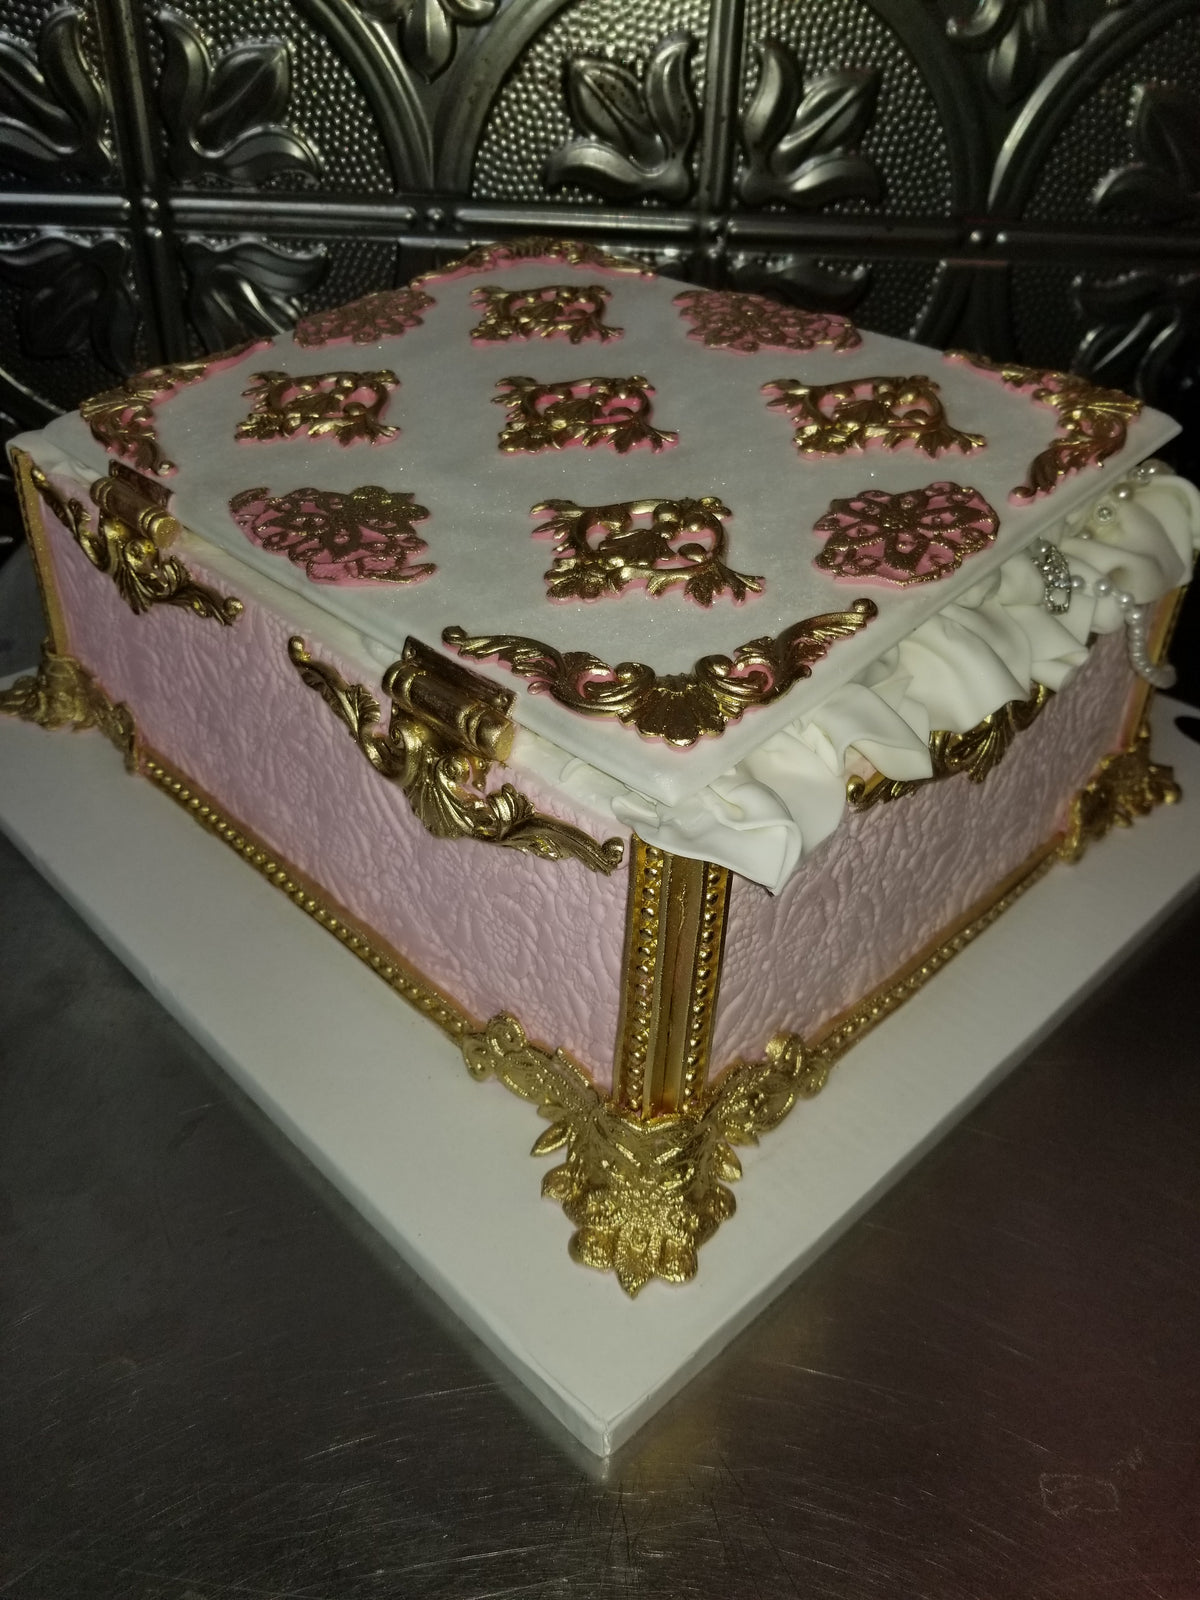 Jewelry box cake CS0005